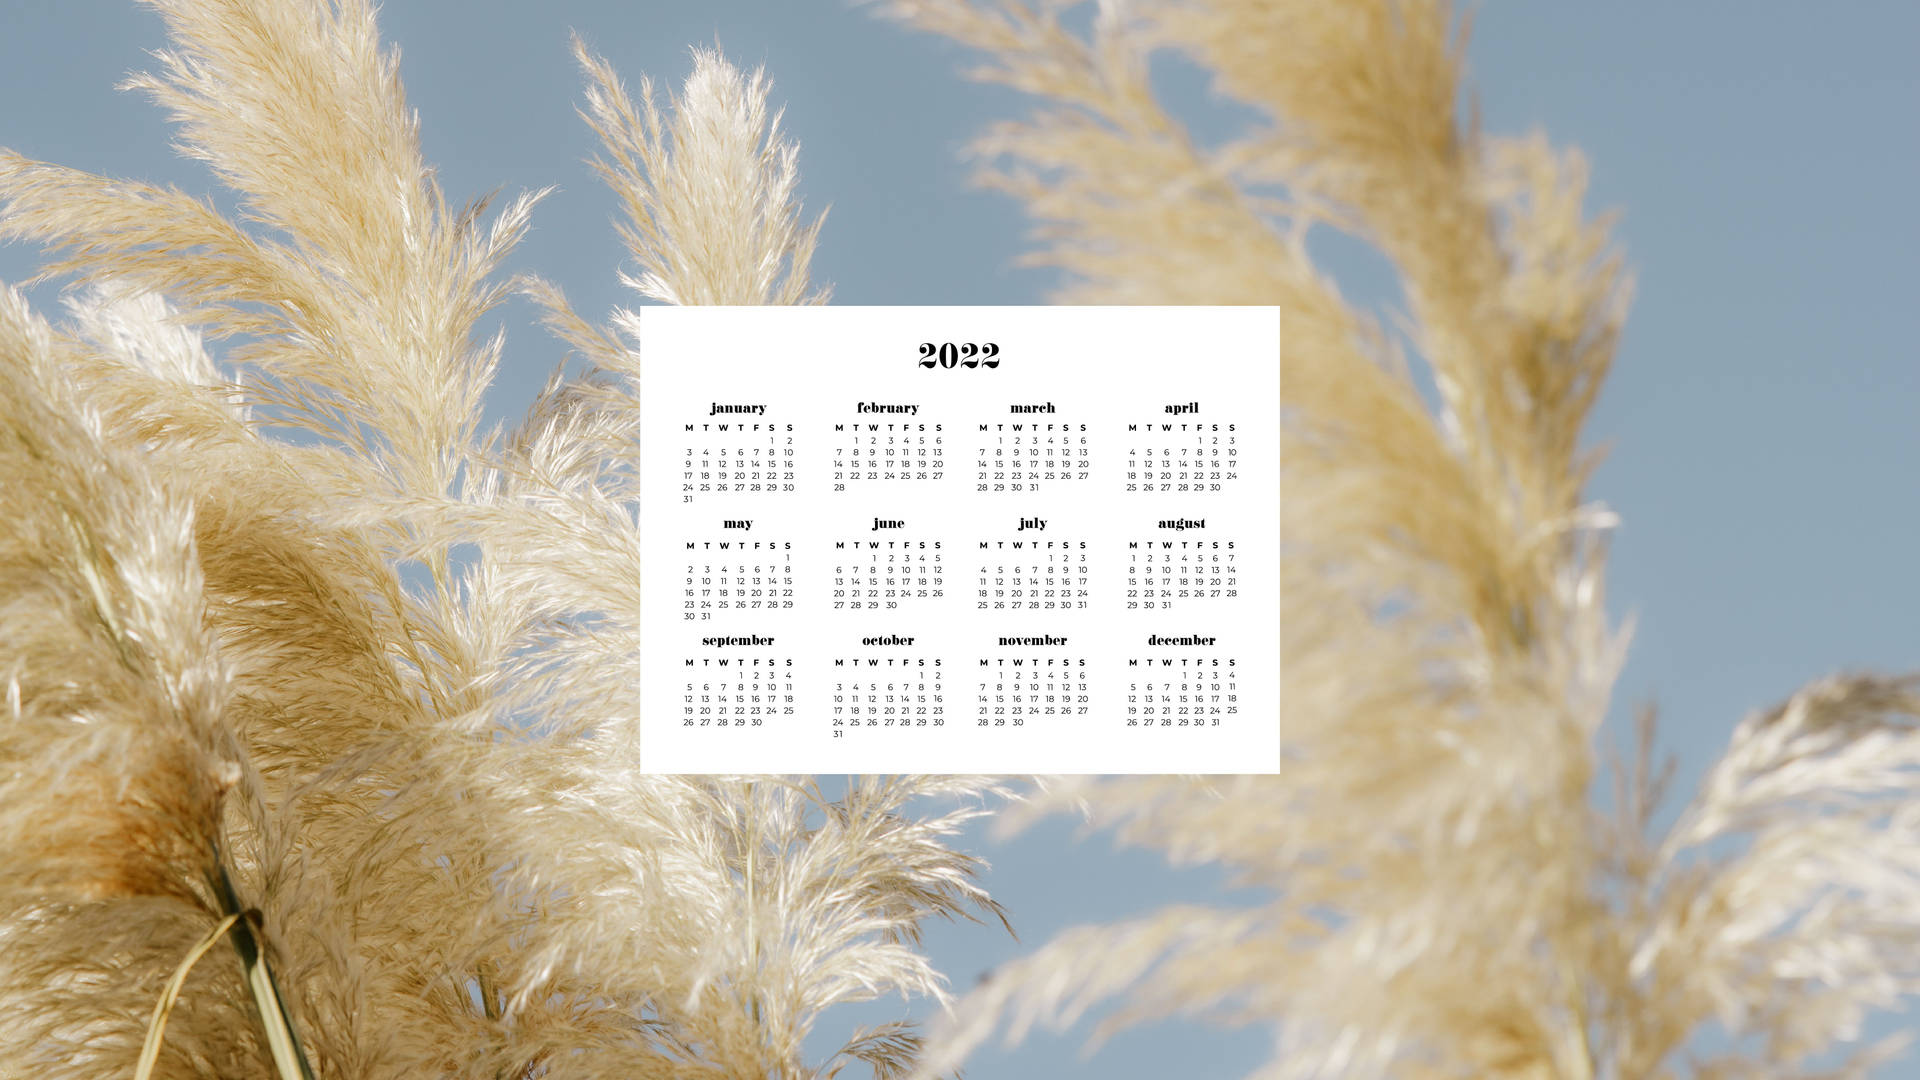 Pampas Grass 2022 Calendar Background